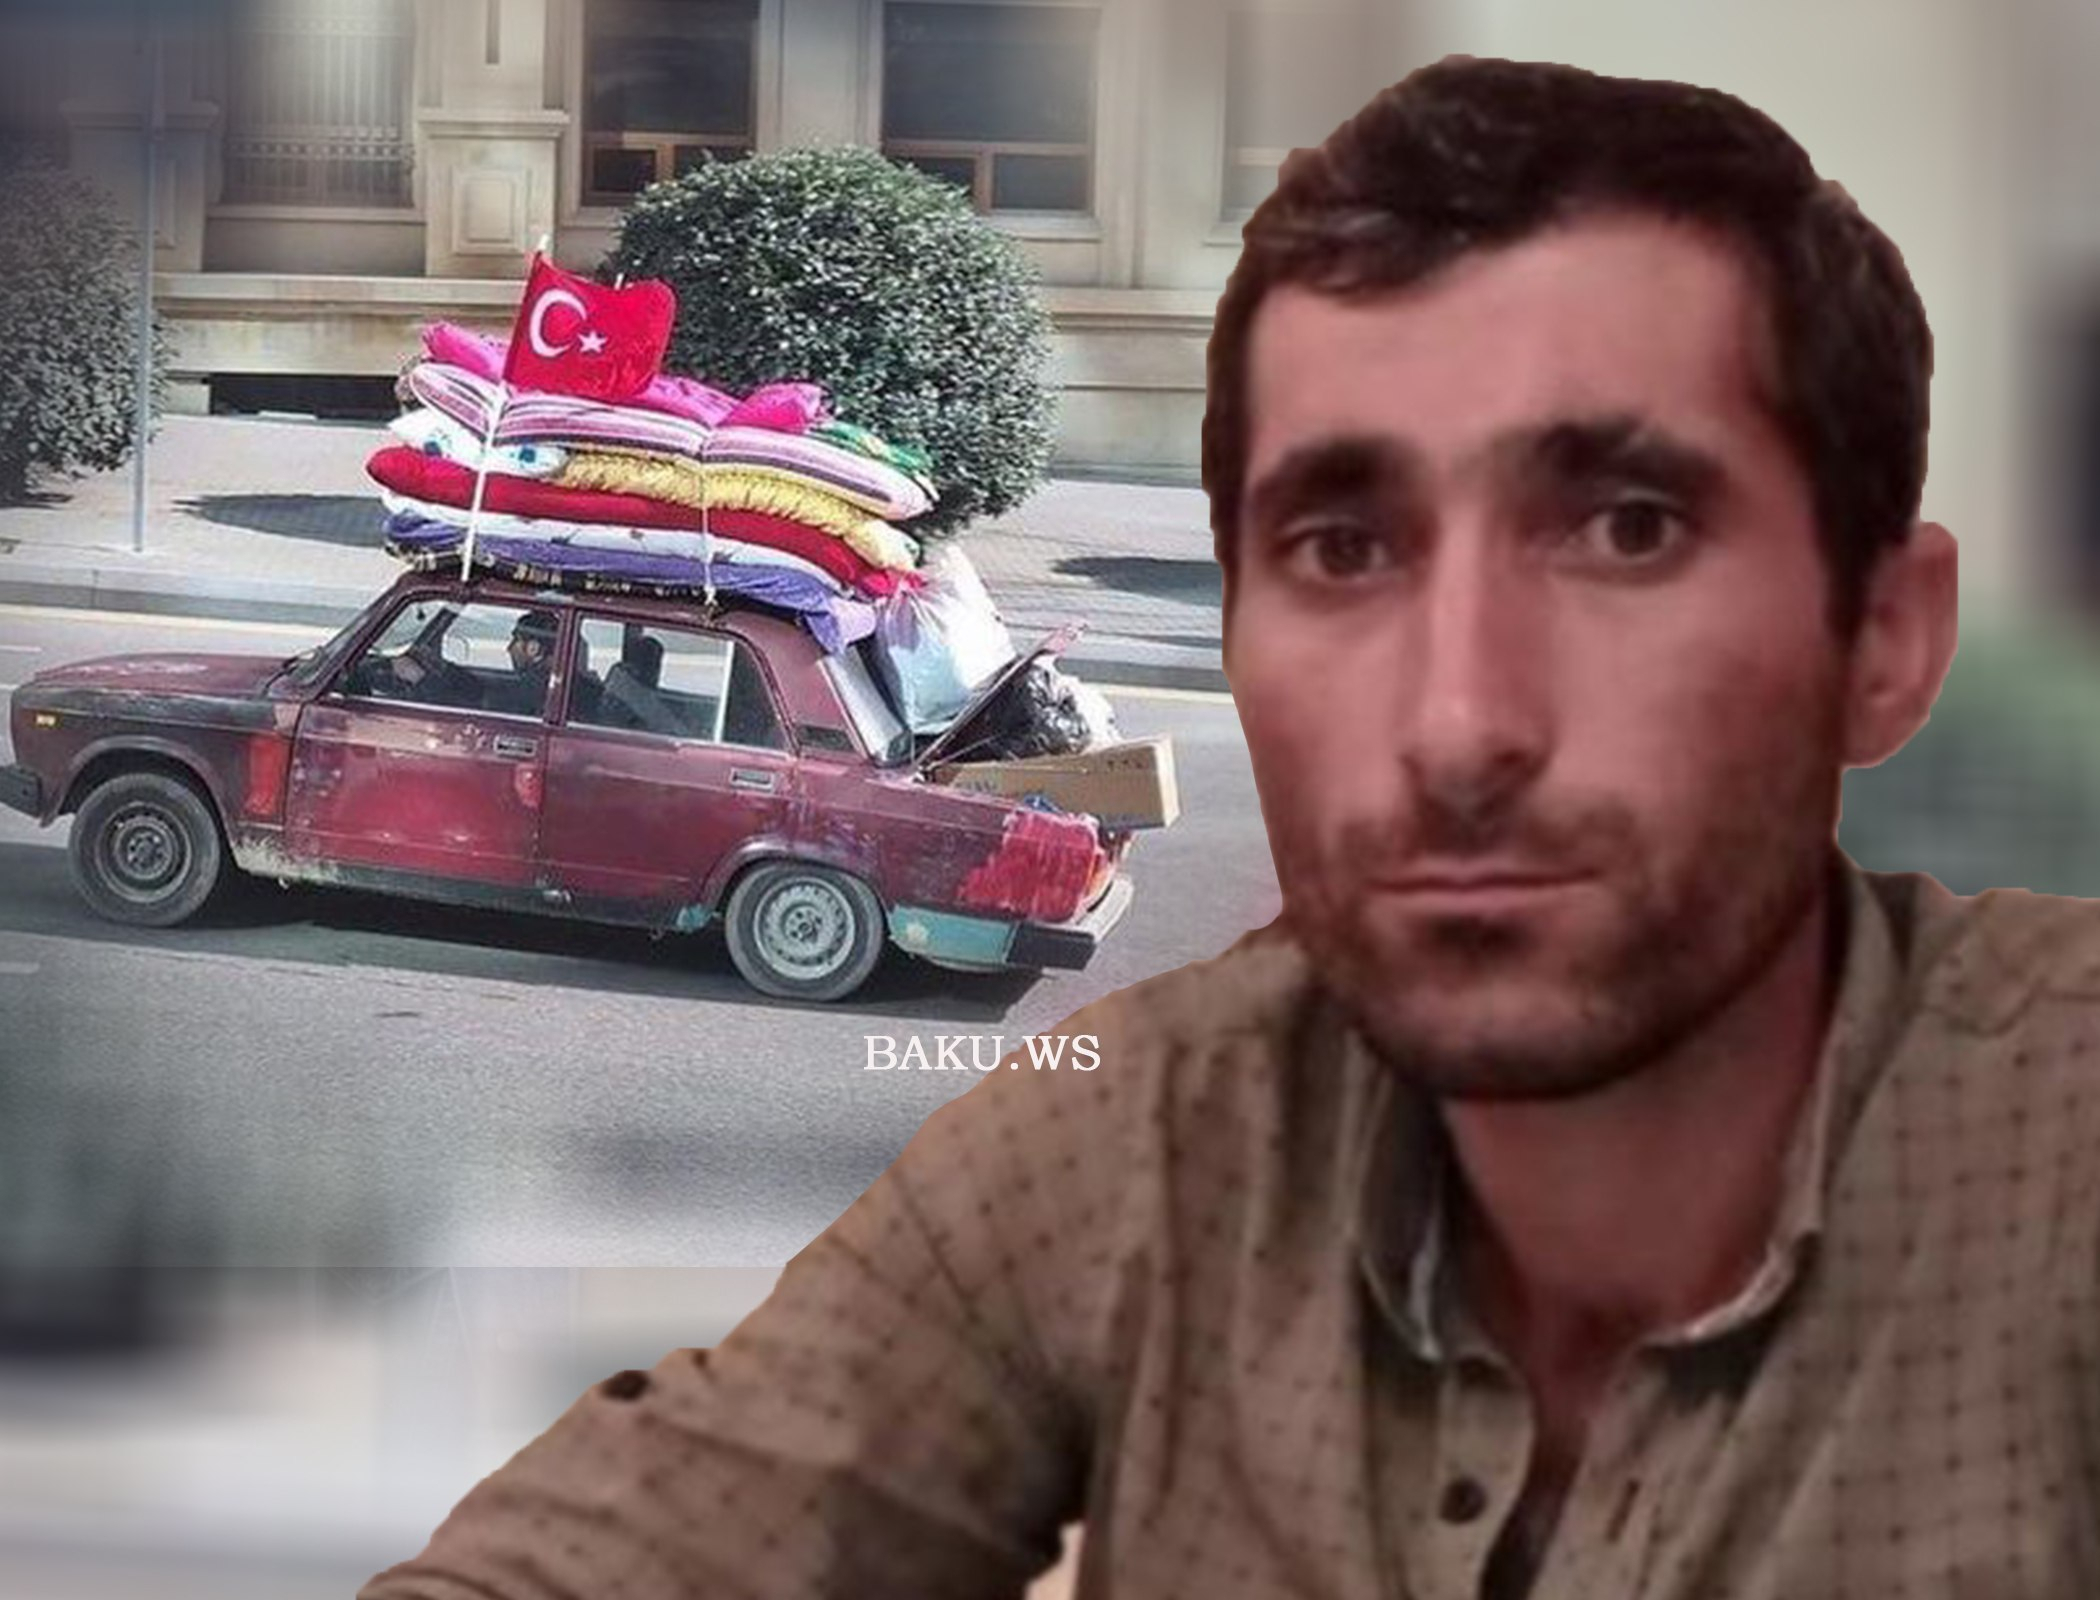 Турецкий бизнесмен подарил автомобиль Сарвару Баширли, привозившему гумпомощь на старой машине - ФОТО